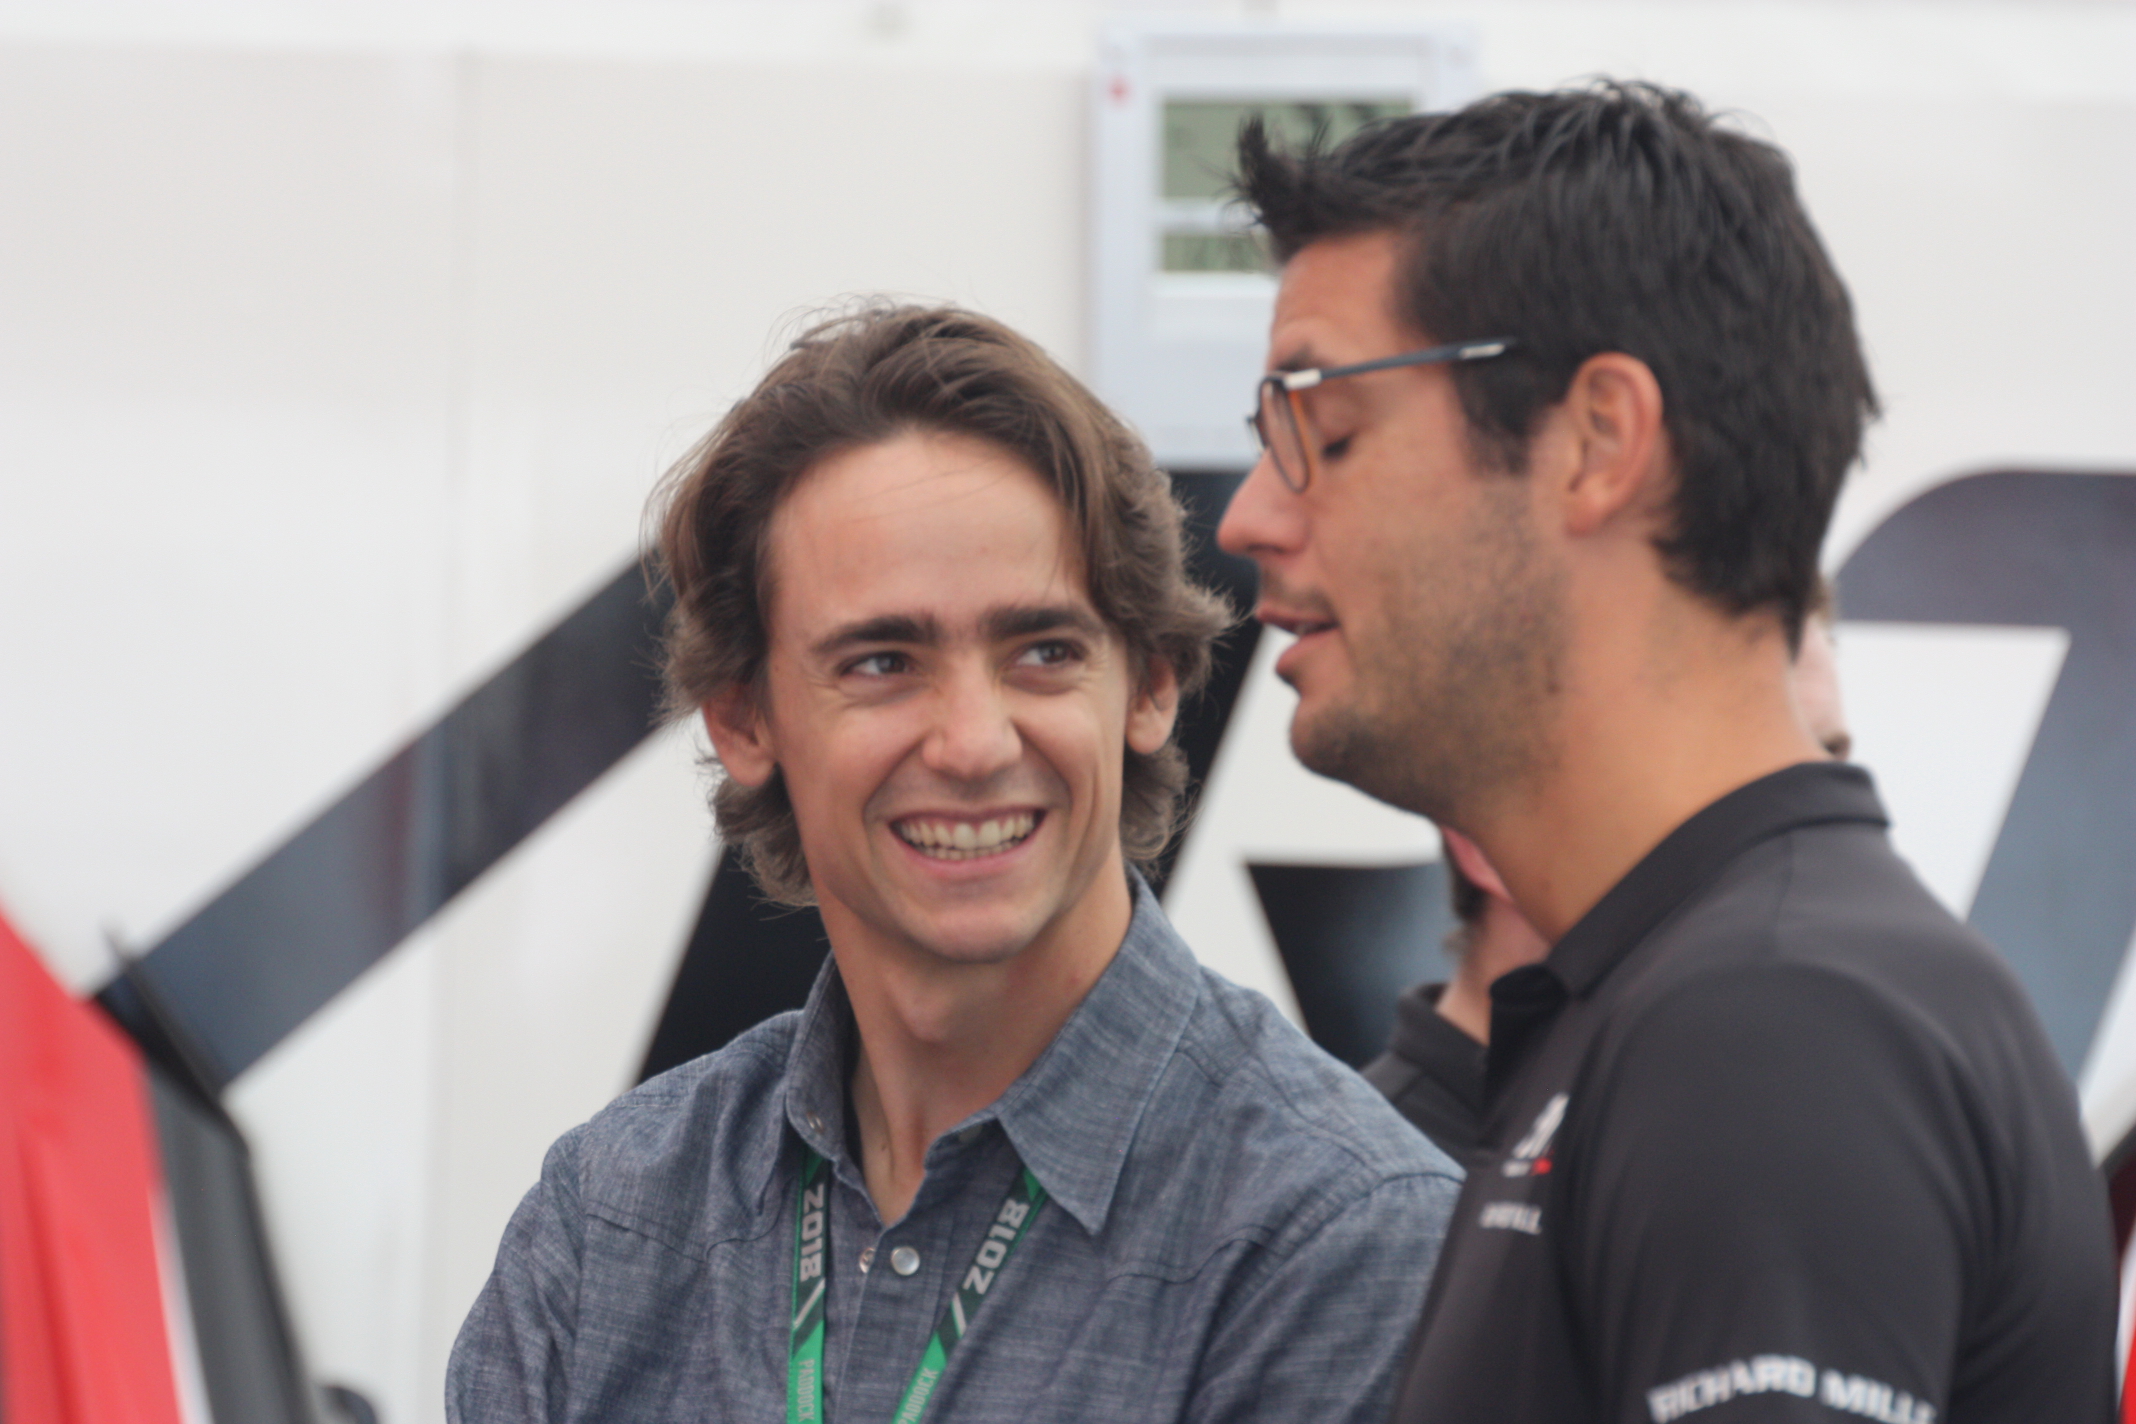 Přijel se do Monzy podívat na své následníky: První mistr GP3 Esteban Gutierrez